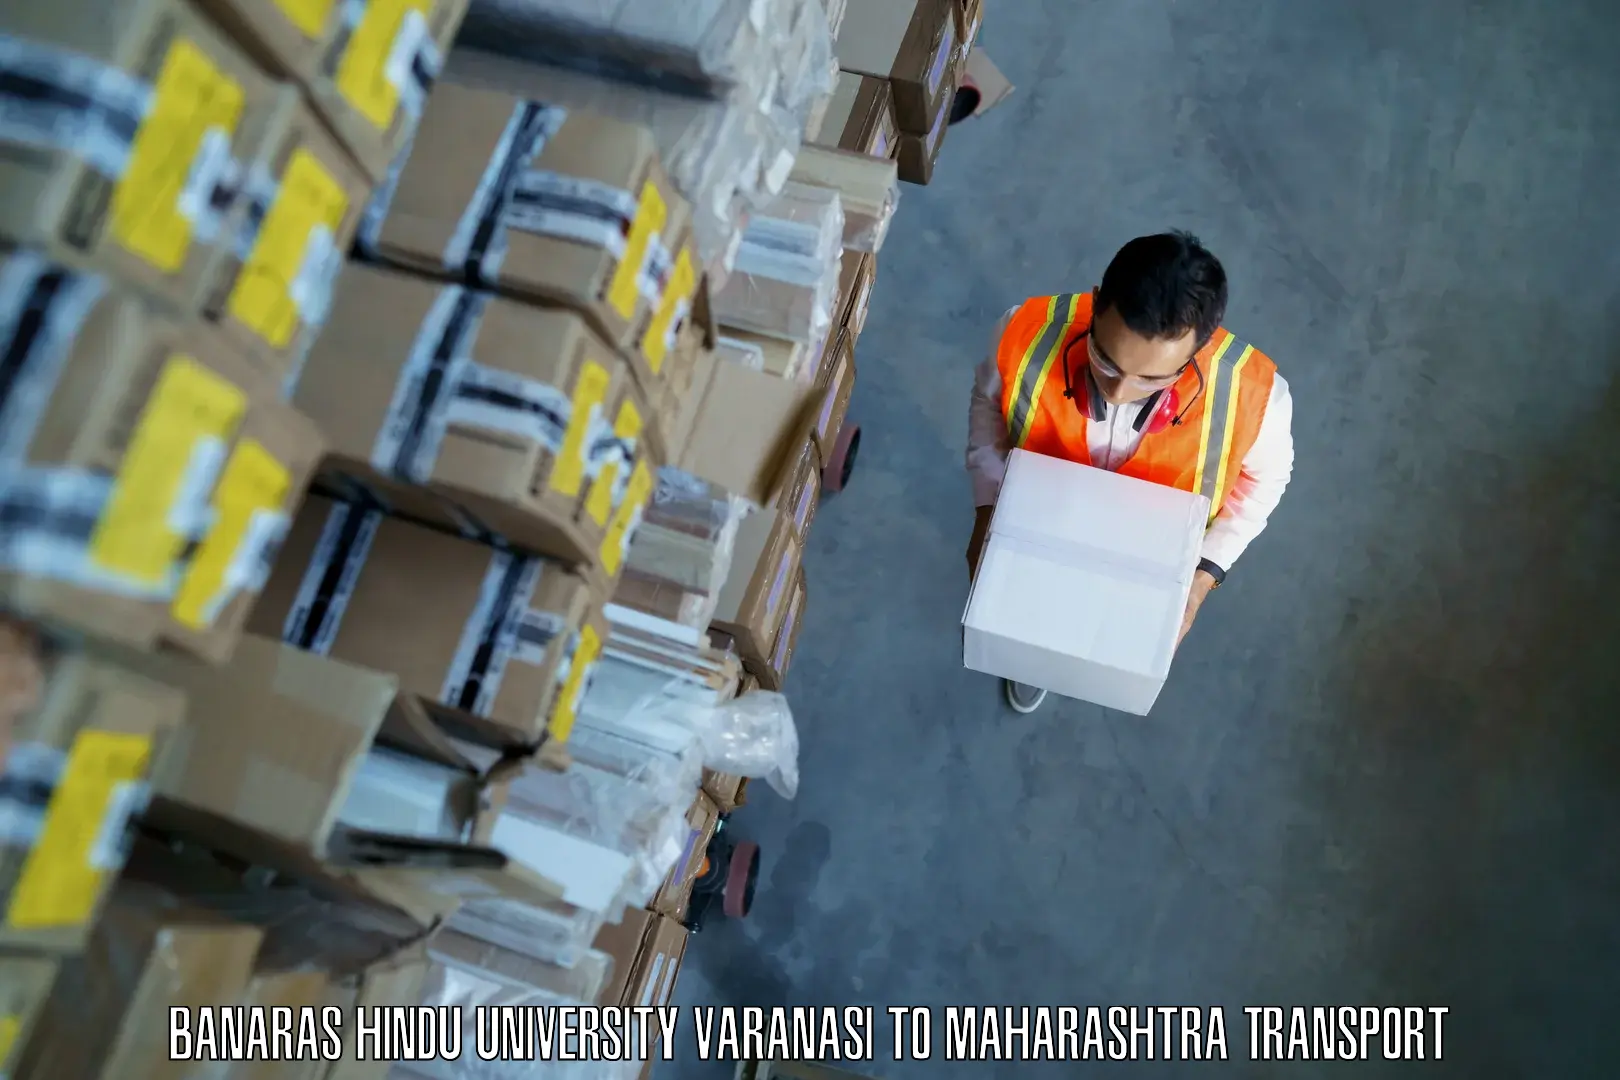 Package delivery services Banaras Hindu University Varanasi to Oras